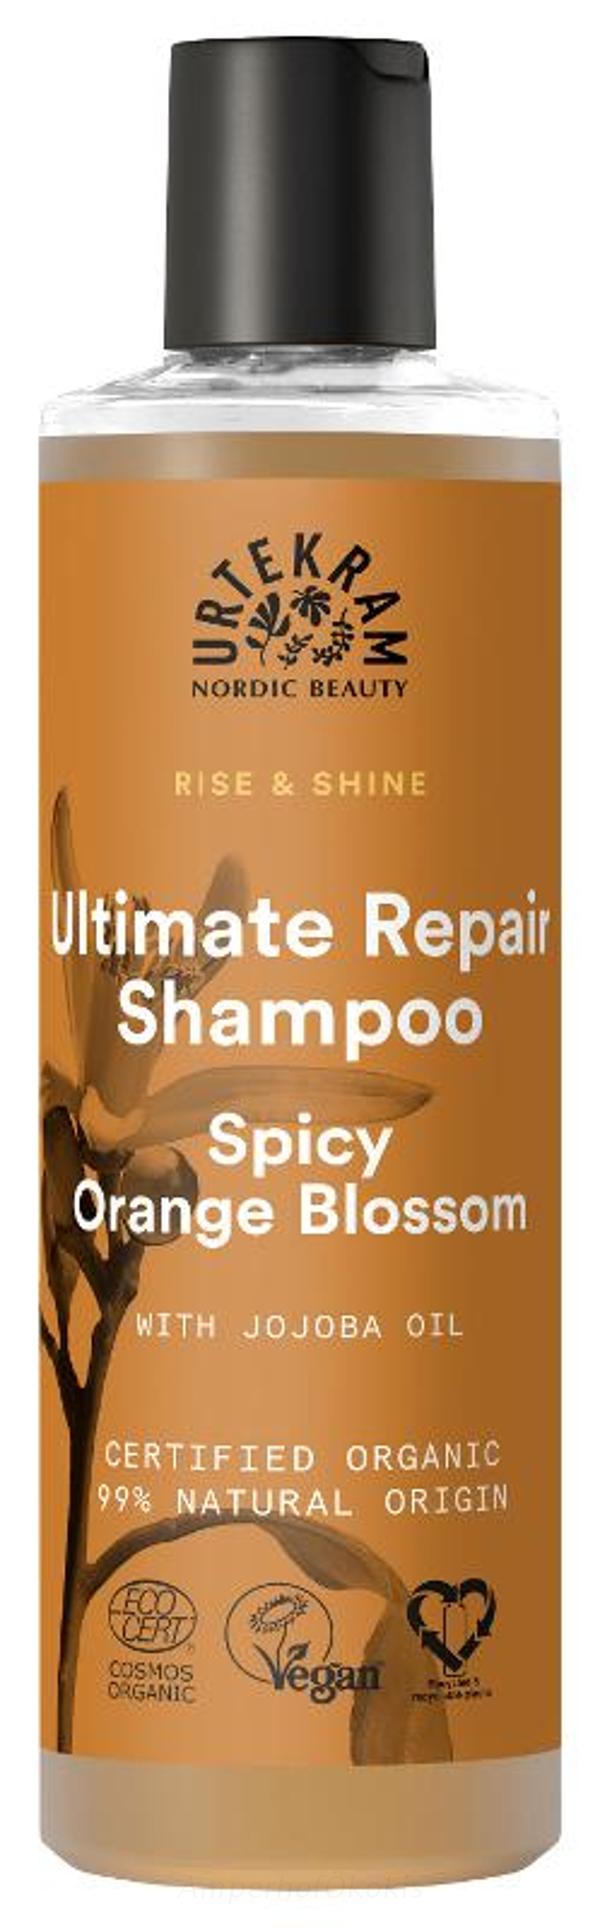 Produktfoto zu Shampoo Orange Blossom 250 ml